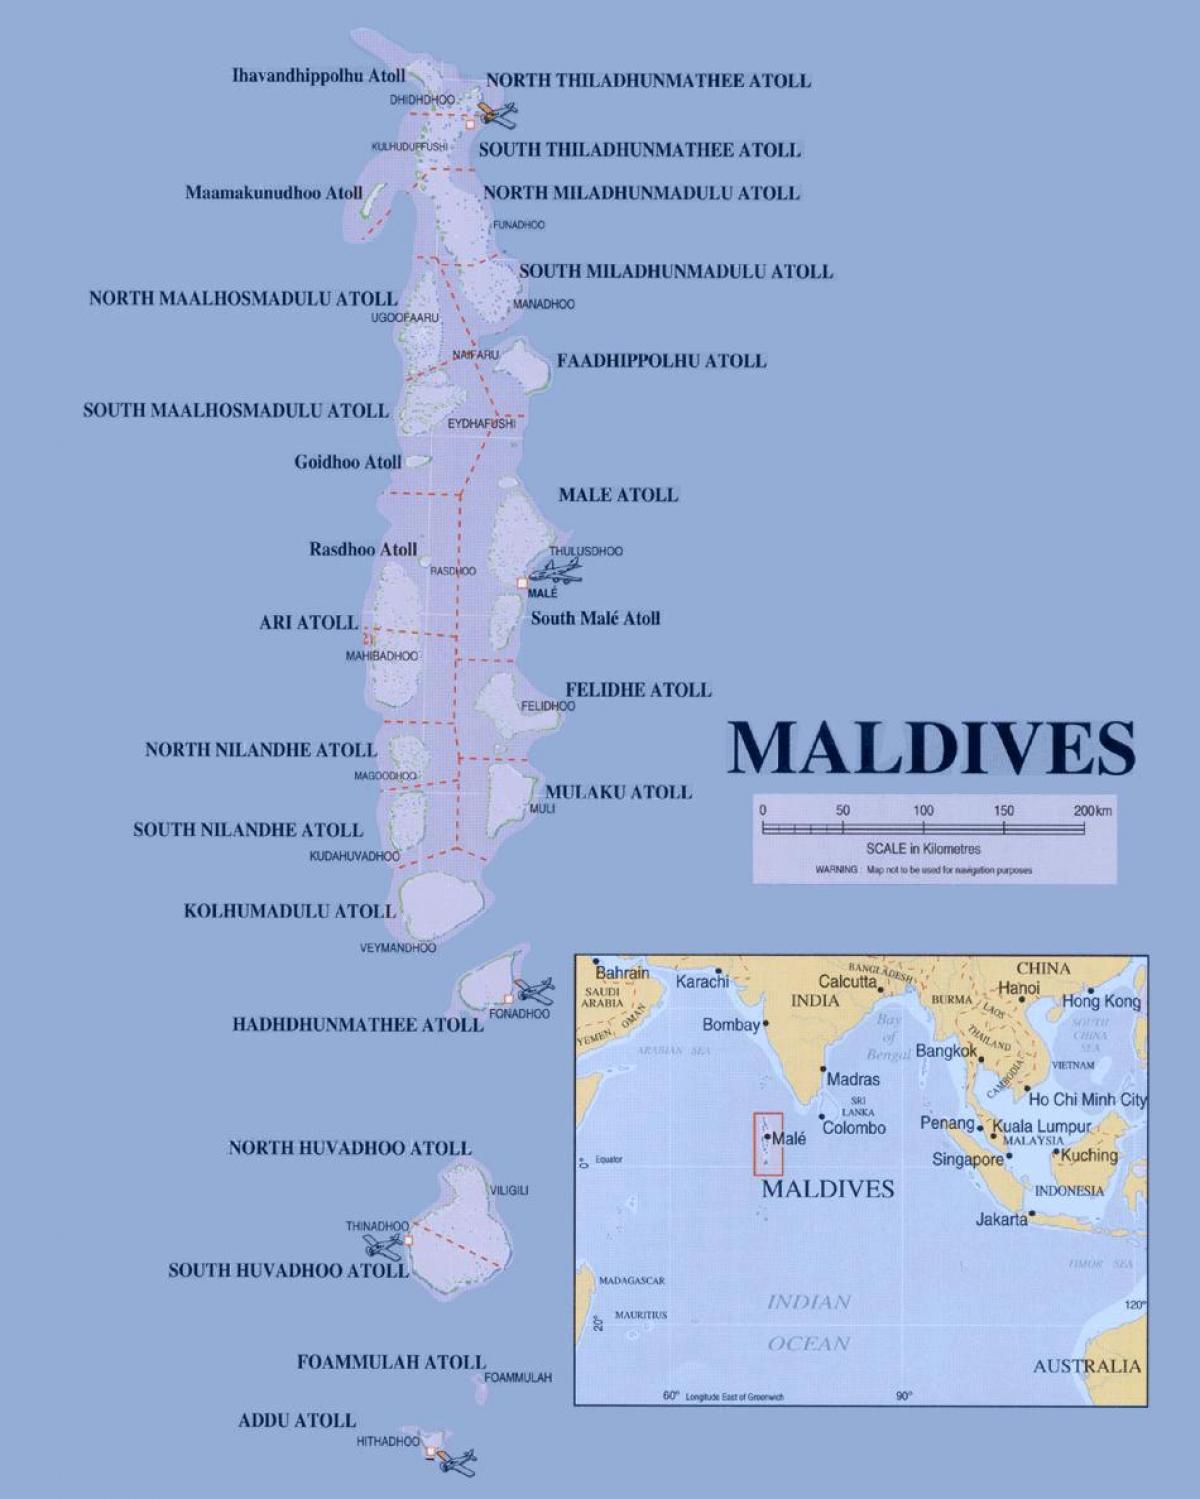 מפה של האיים המלדיביים פוליטי.